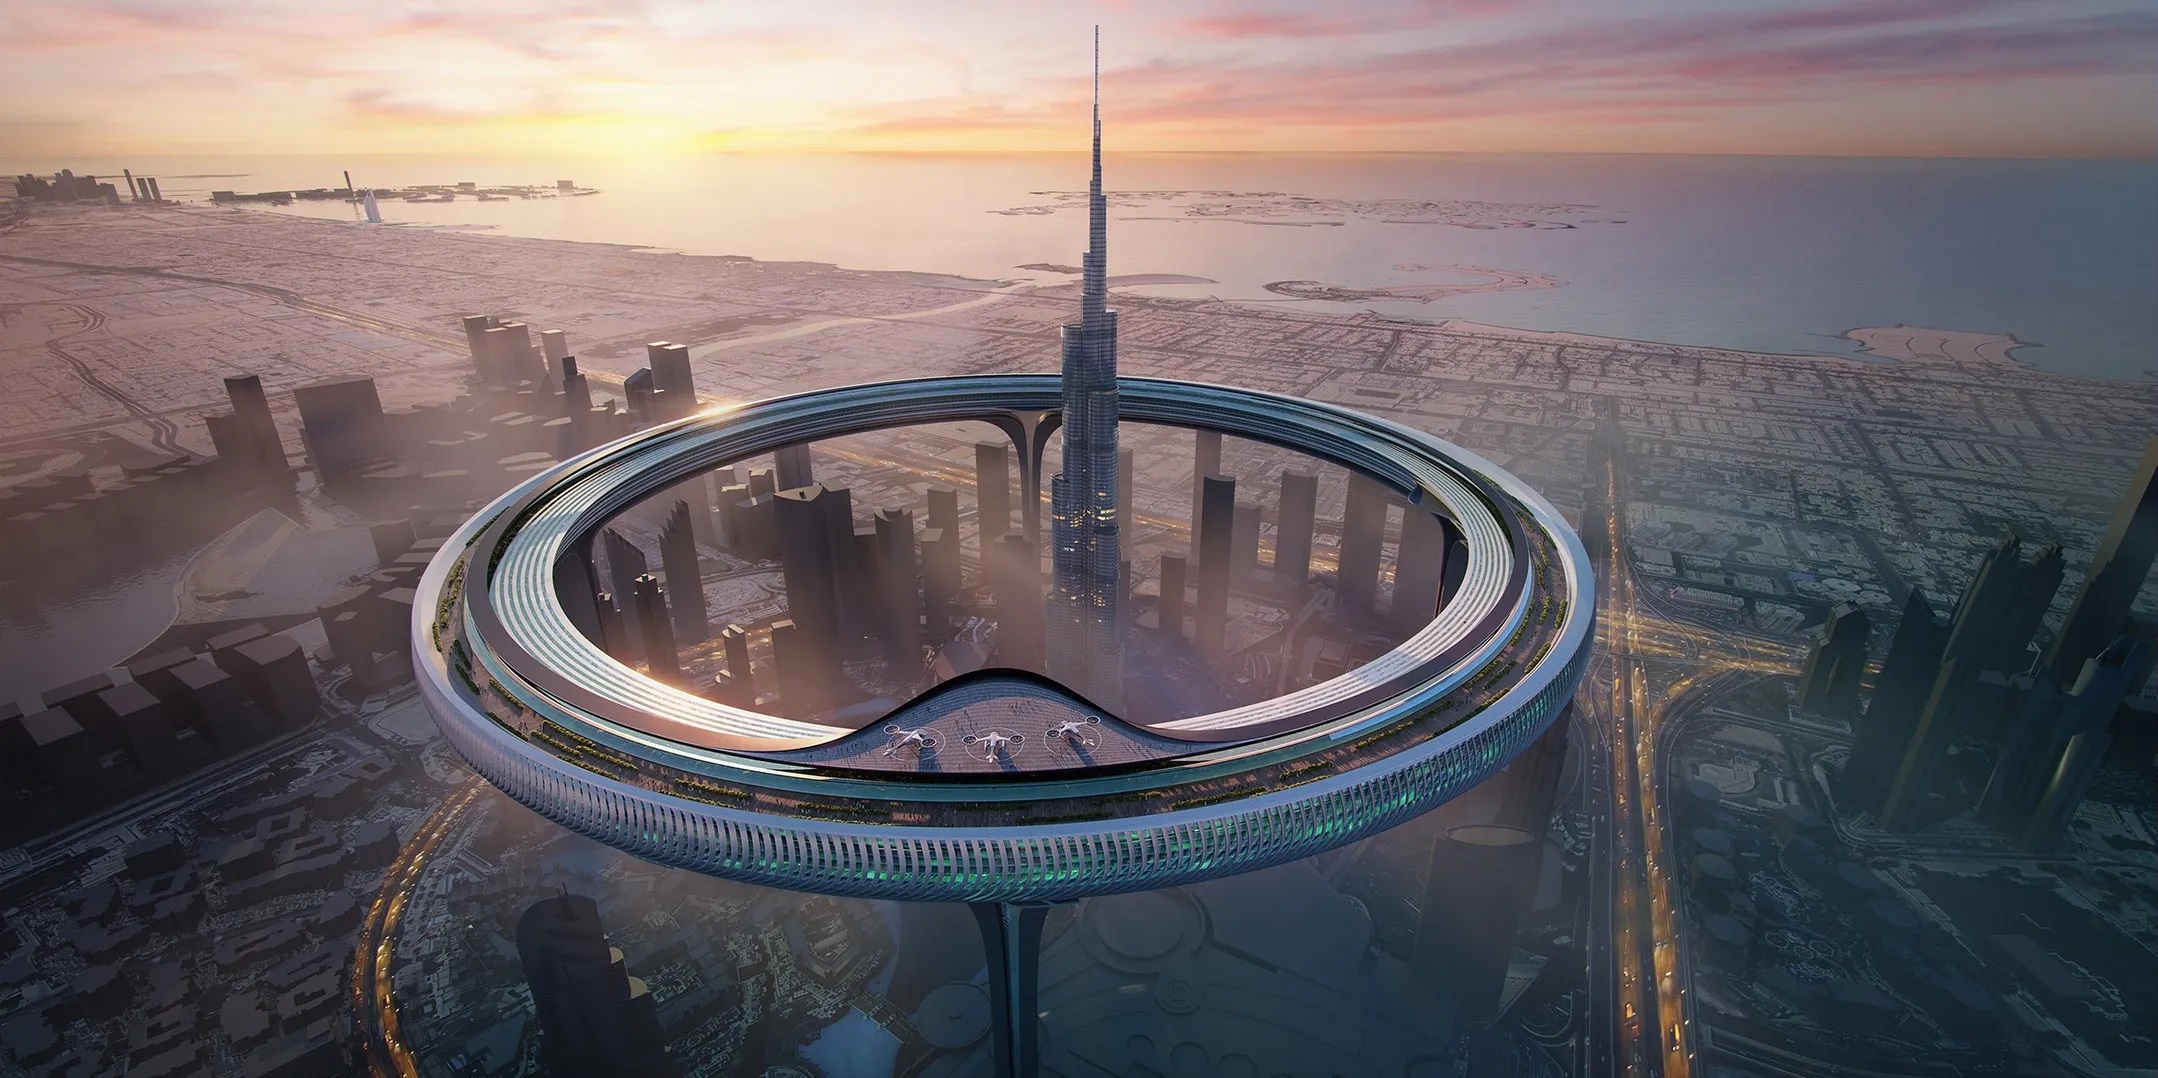 Znera Space propose de construire un immeuble de 550 mètres à Downtown Circle autour du plus haut gratte-ciel du monde, le Burj Khalifa